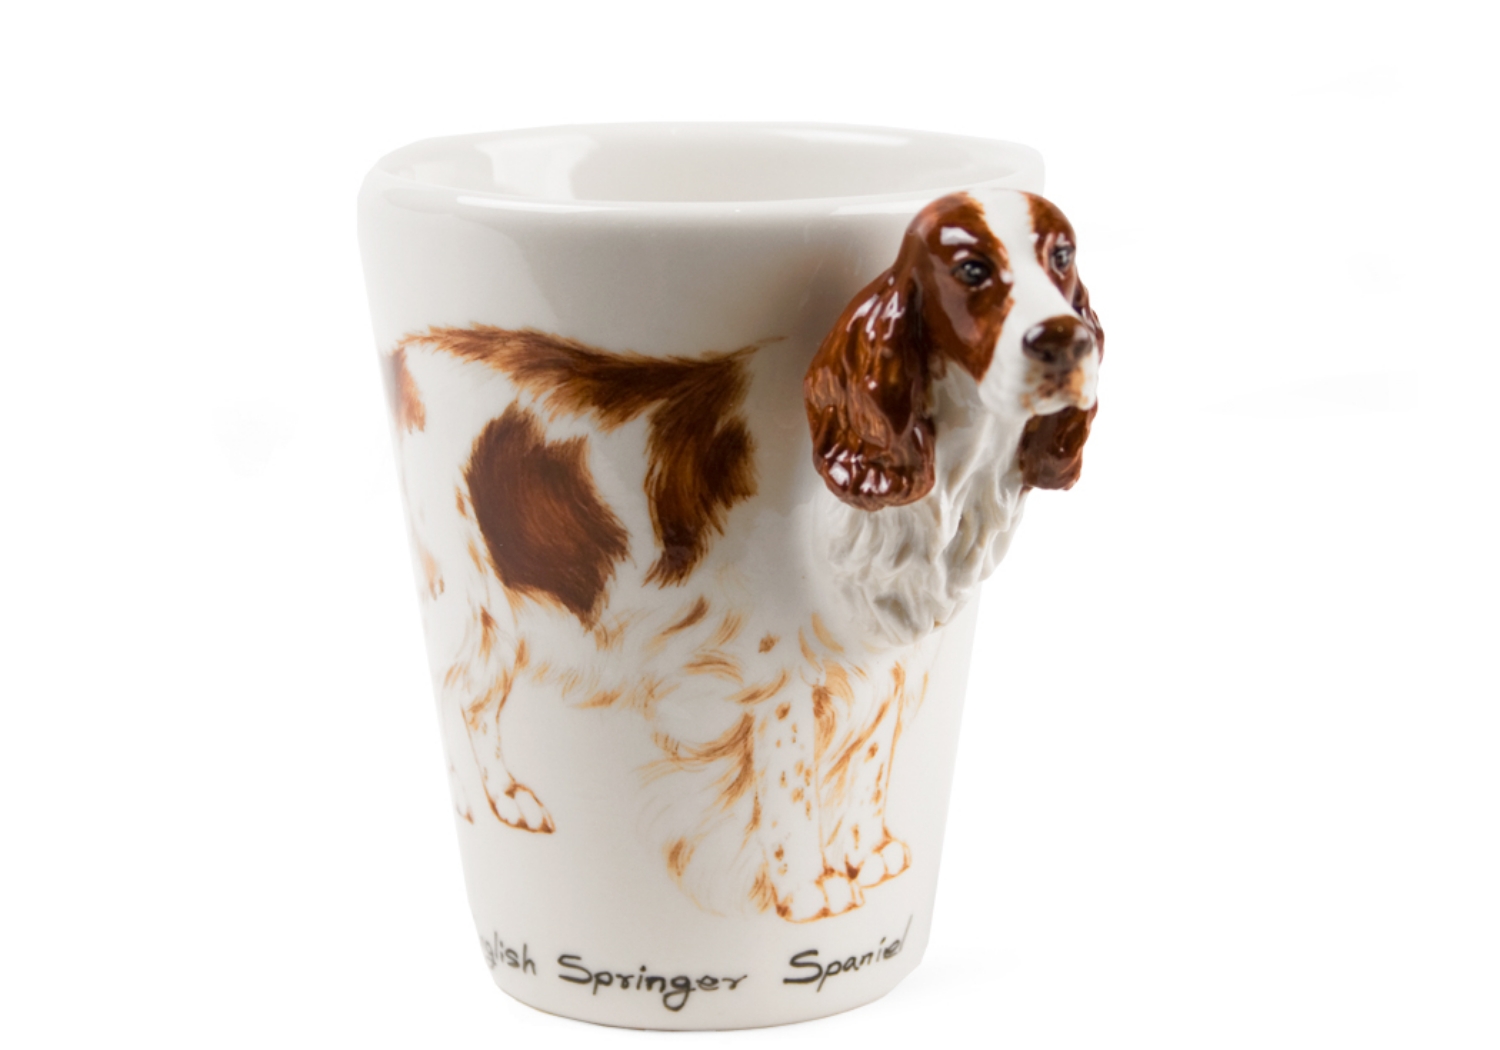 English Springer Spaniel Coffee Mug